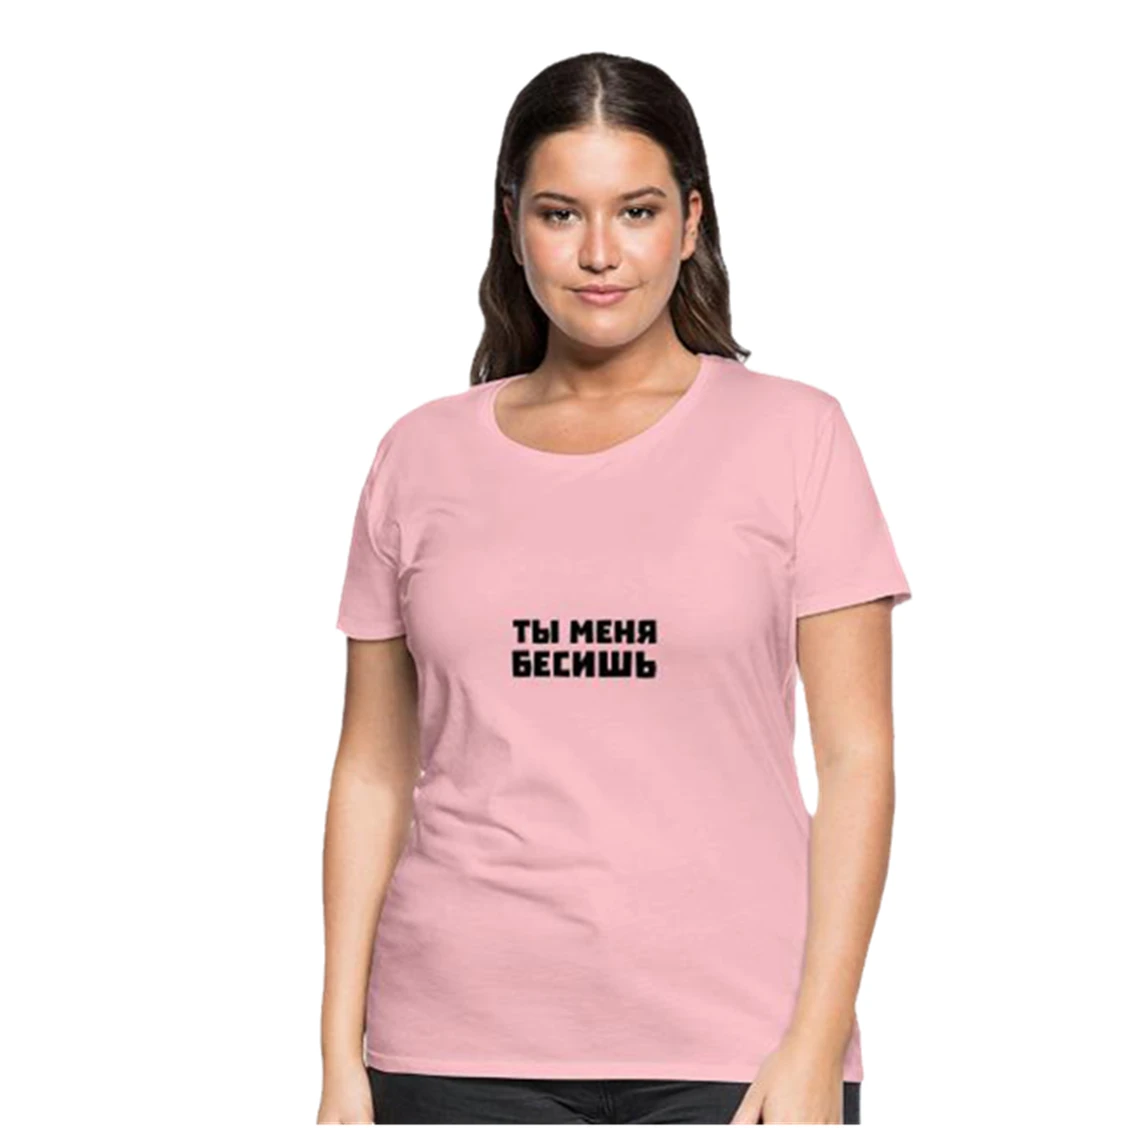 

Женская Повседневная рубашка, летняя футболка большого размера с русскими надписями, модная розовая Женская футболка из 100% хлопка с графич...